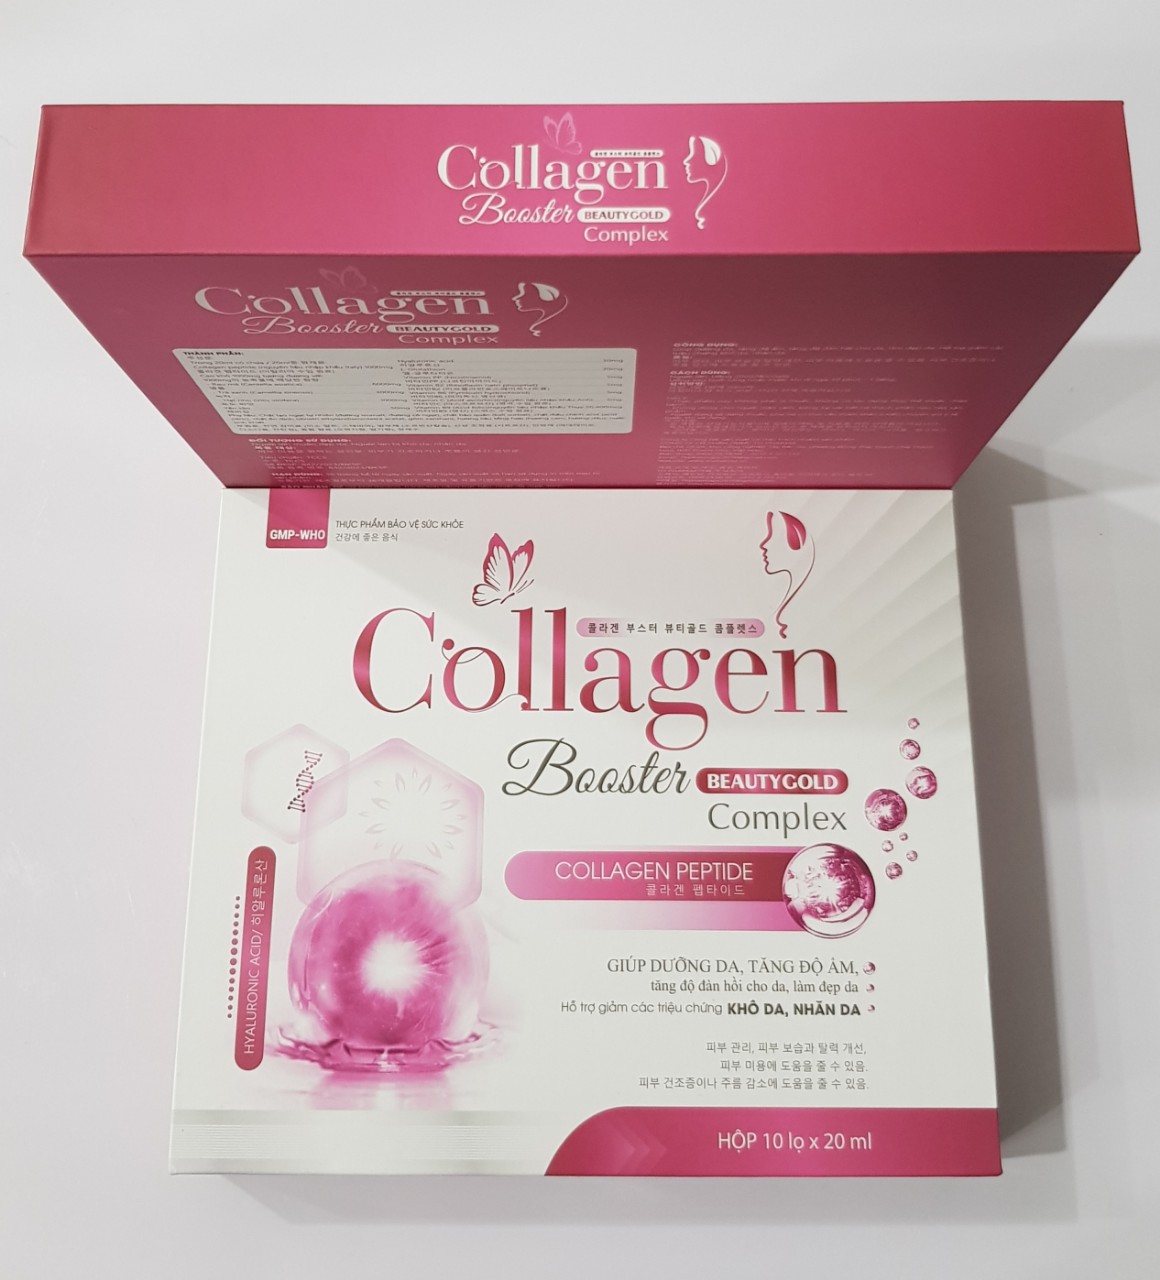 Dung dịch uống Collagen : Giúp dưỡng da, làm đẹp da, tăng độ ẩm, độ đàn hồi cho da.